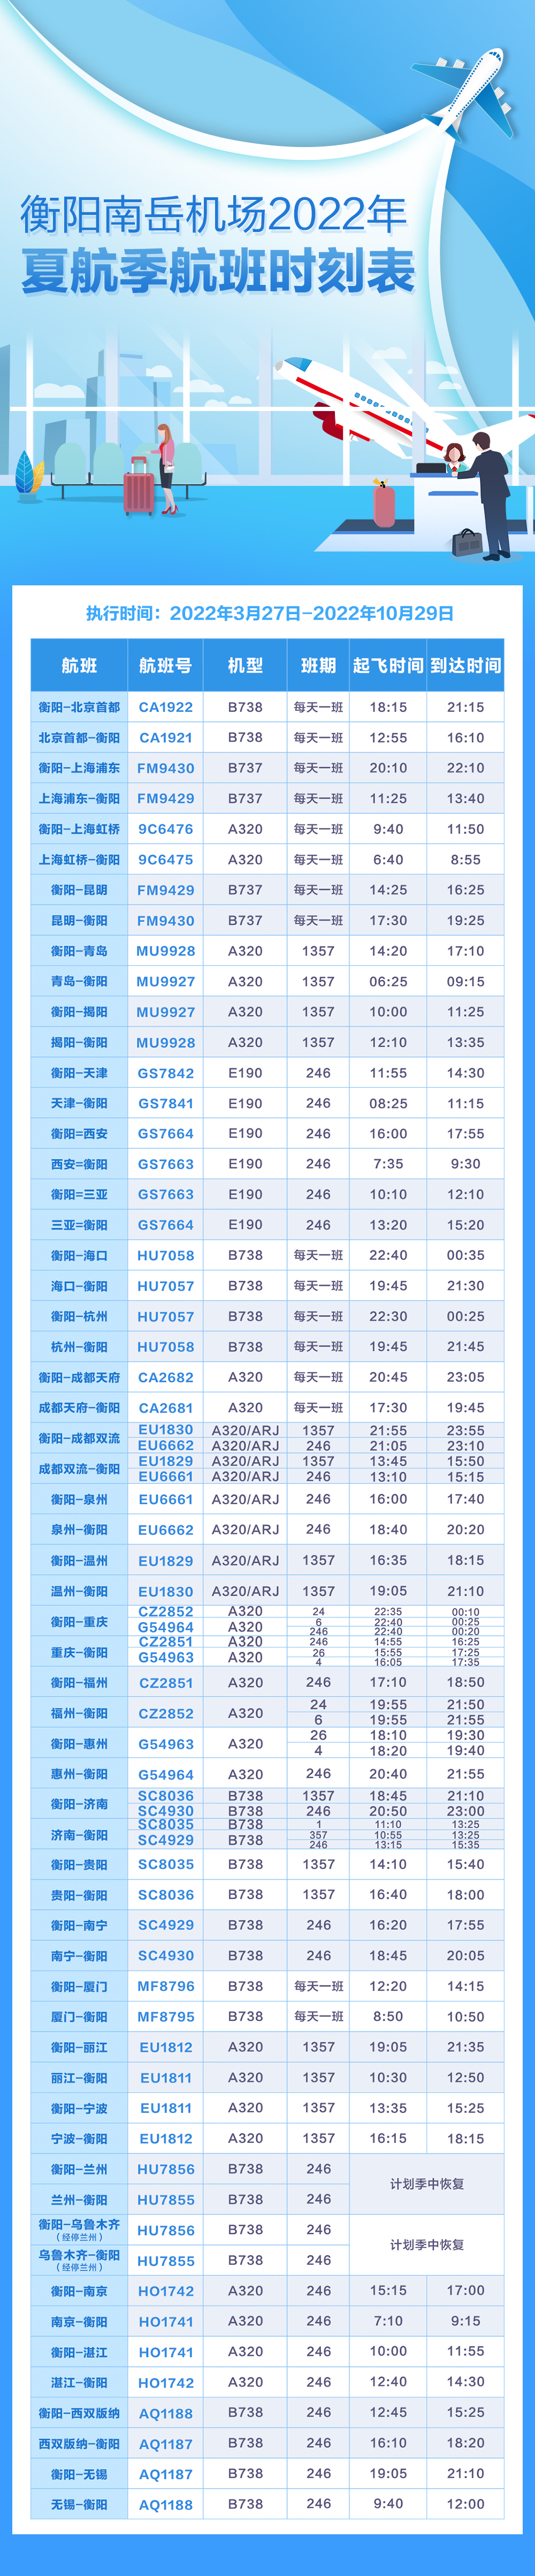 南岳机场航班时刻表。.jpg